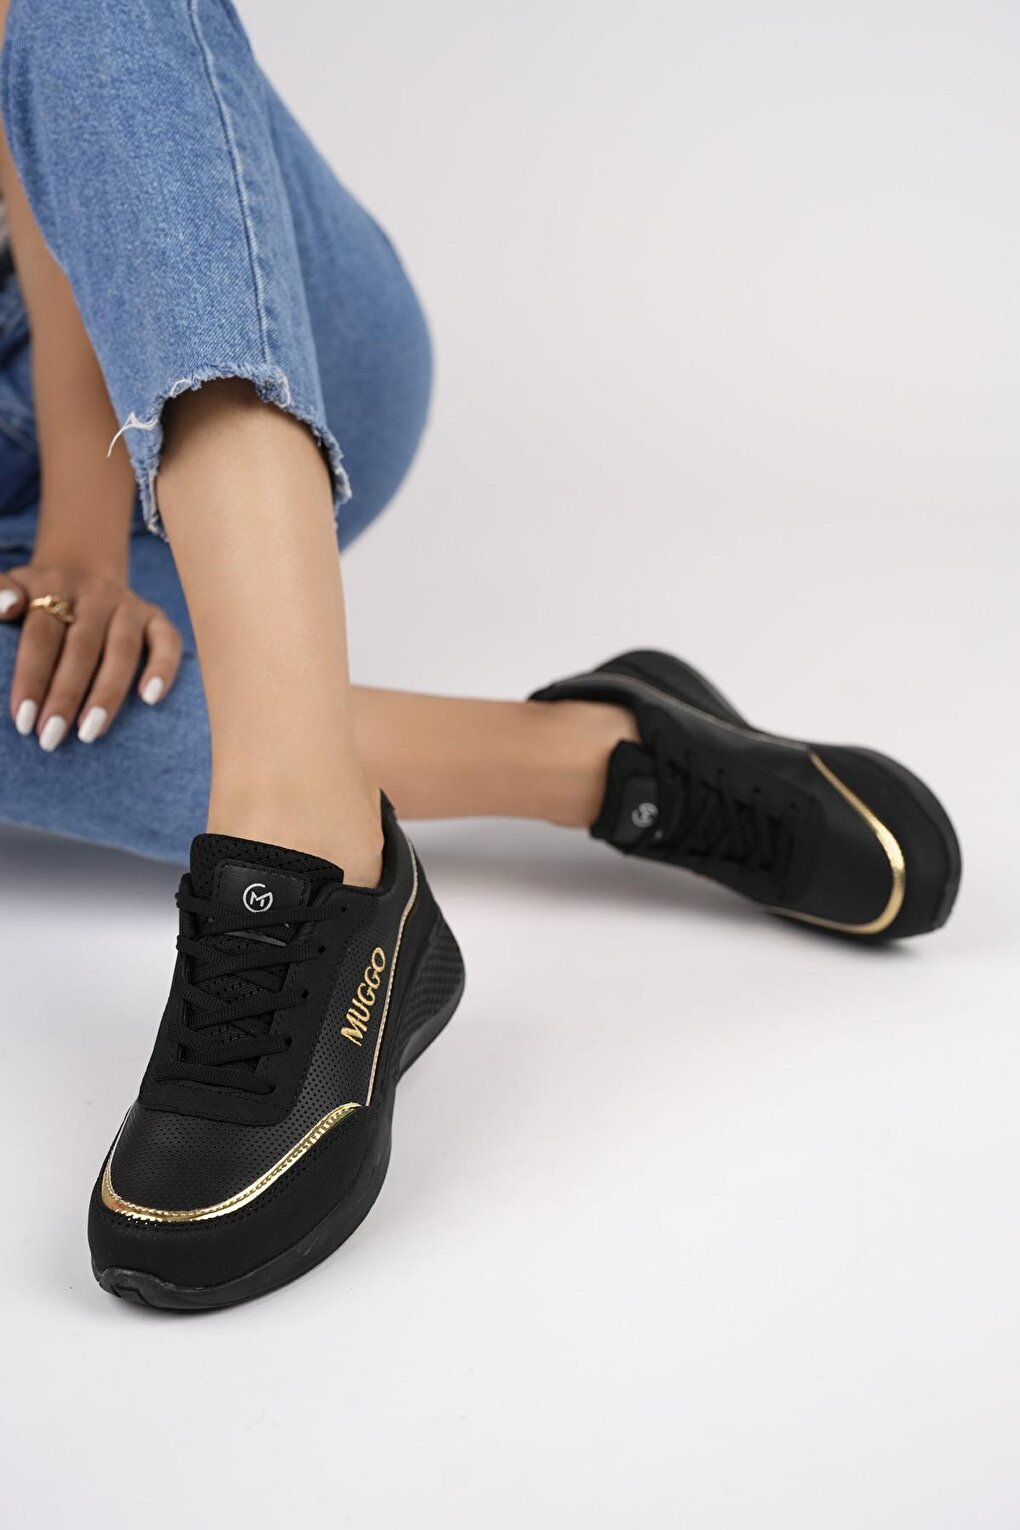 Женские ортопедические повседневные стильные удобные кроссовки на шнуровке Happy, спортивная обувь Muggo, черное золото черное золото